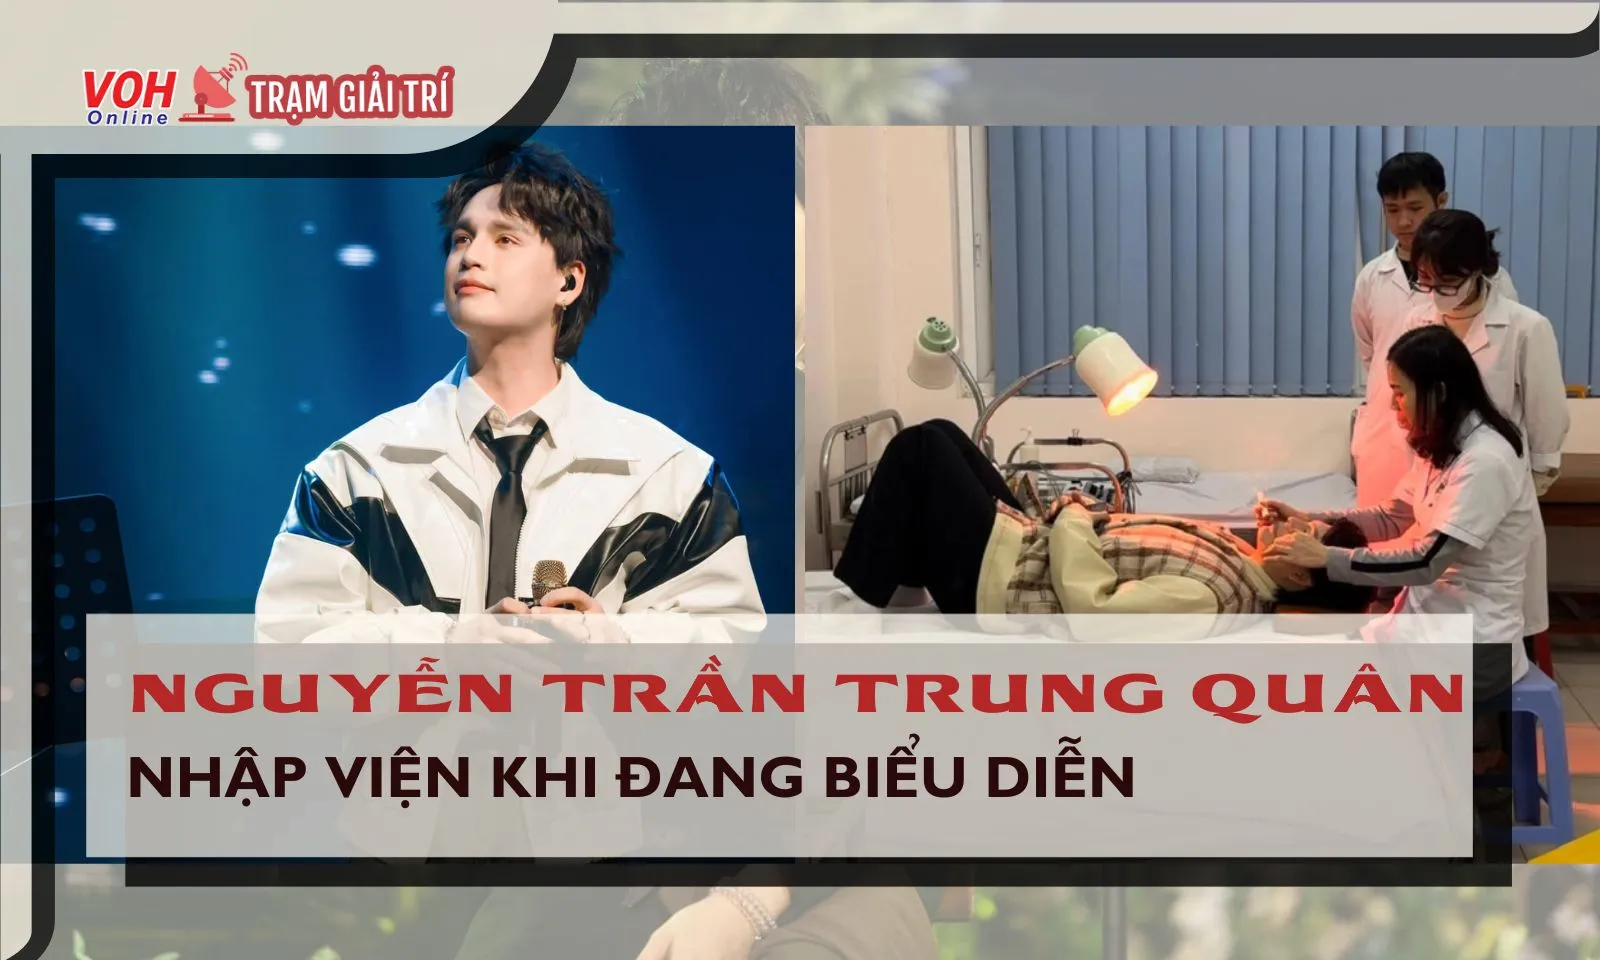 Ca sĩ Nguyễn Trần Trung Quân bị liệt dây thần kinh, phải nhập viện khi đang diễn